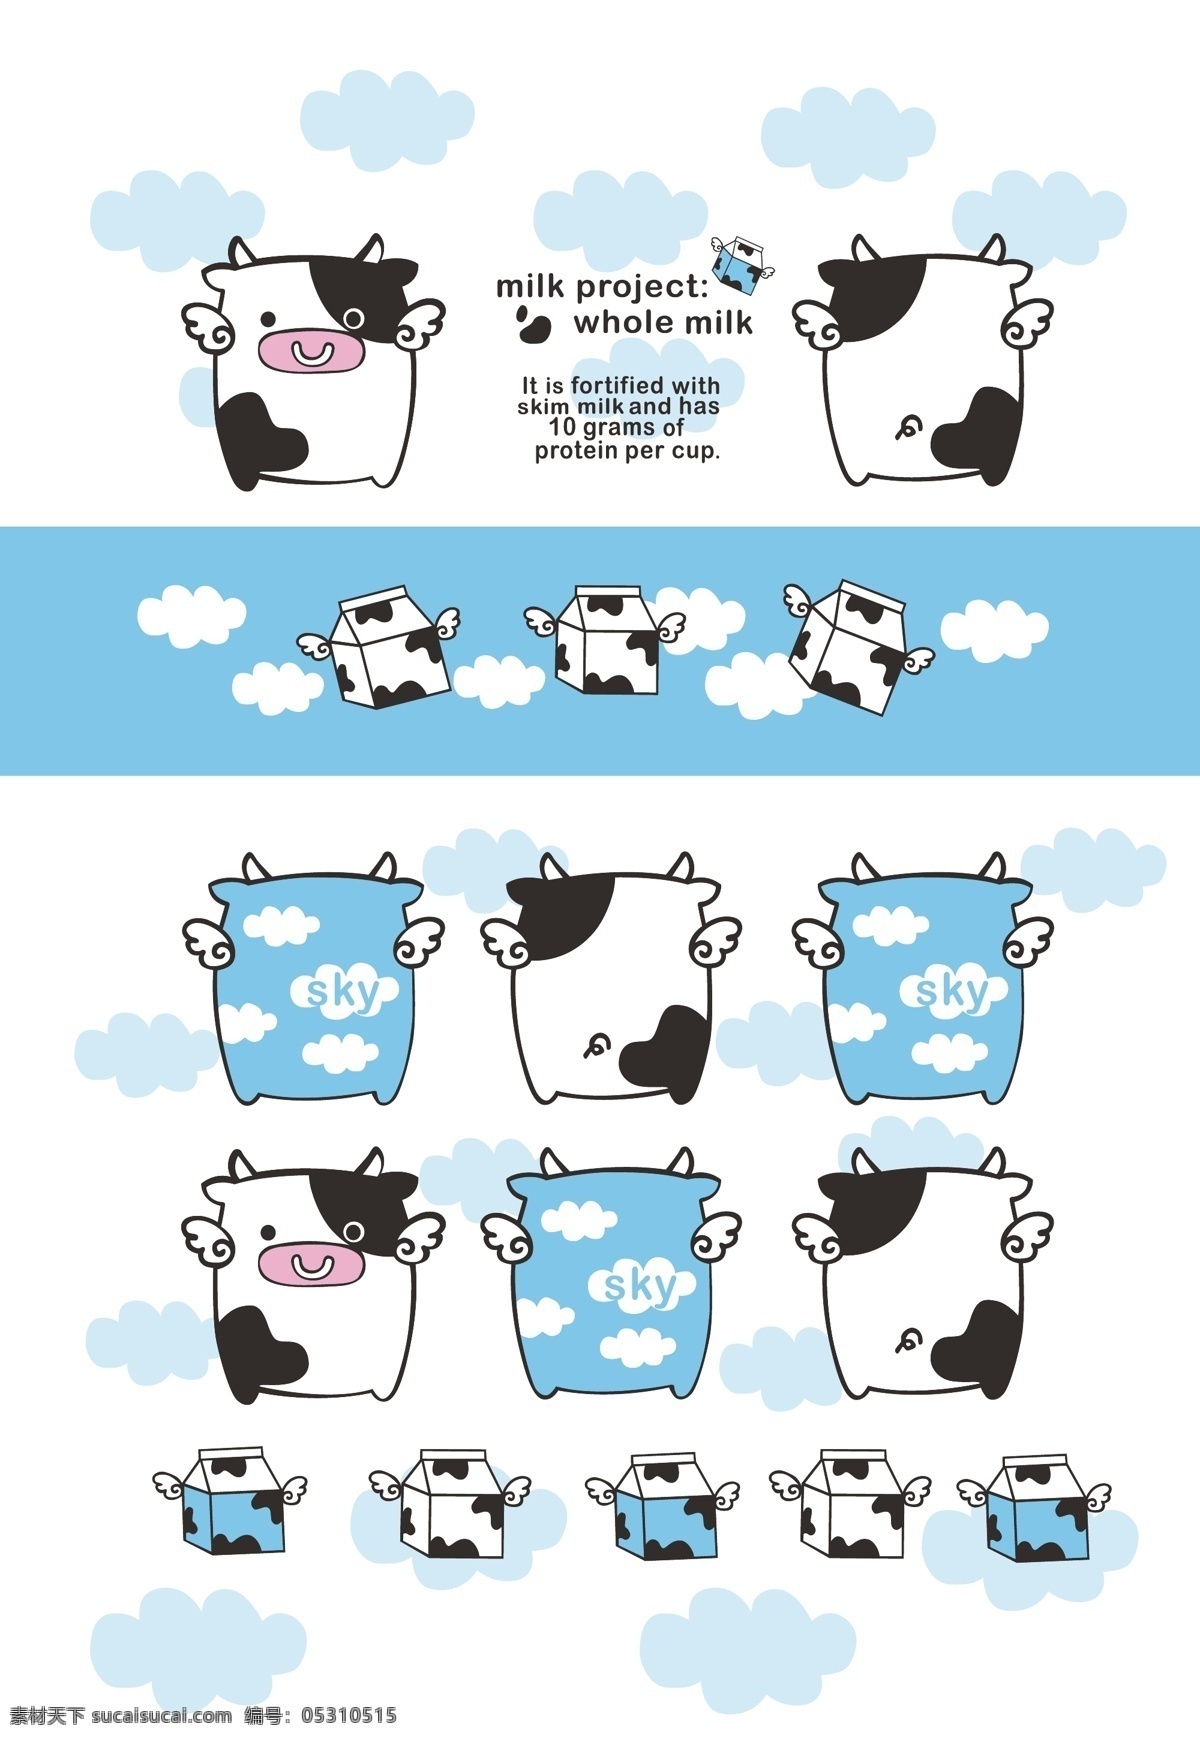 动漫 儿童 卡通 卡通插画 卡通设计 奶牛 牛奶 鲜奶 牛奶矢量素材 牛奶模板下载 牛斑 乳牛 鲜牛奶 纯牛奶 小奶牛 牛轧糖 矢量 psd源文件 餐饮素材